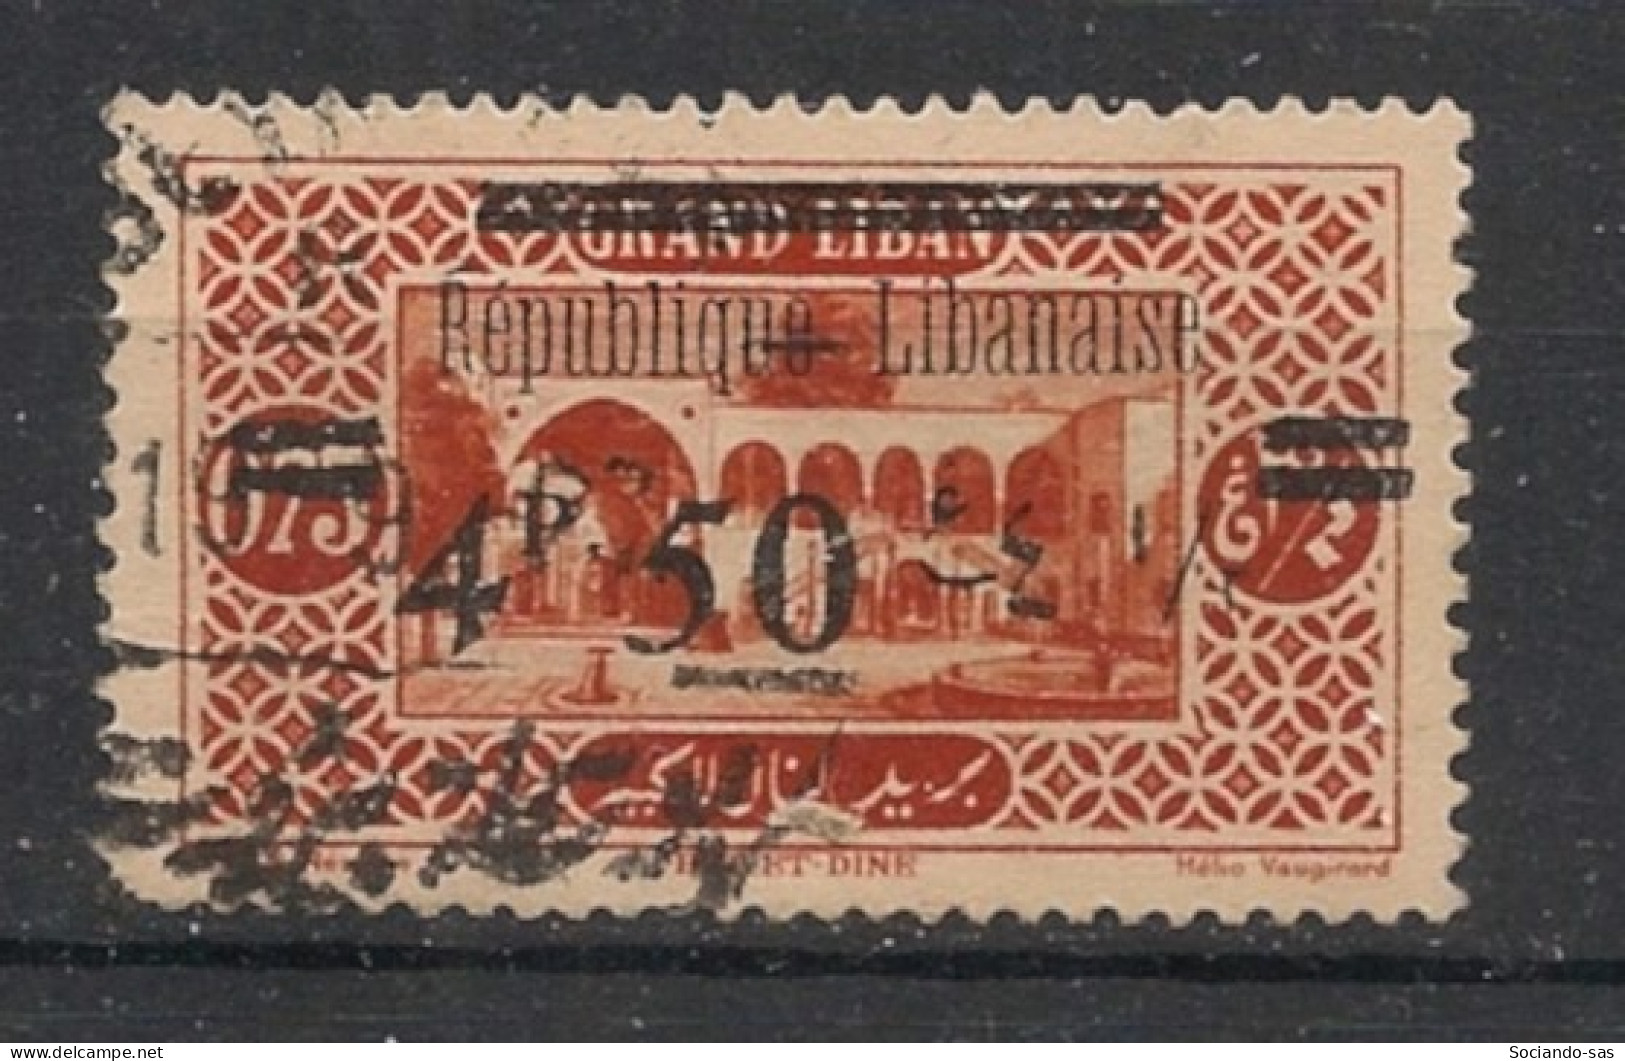 GRAND LIBAN - 1927 - N°YT. 91 - Bet Et Dine 4pi50 Sur 0pi75 - Oblitéré / Used - Gebraucht